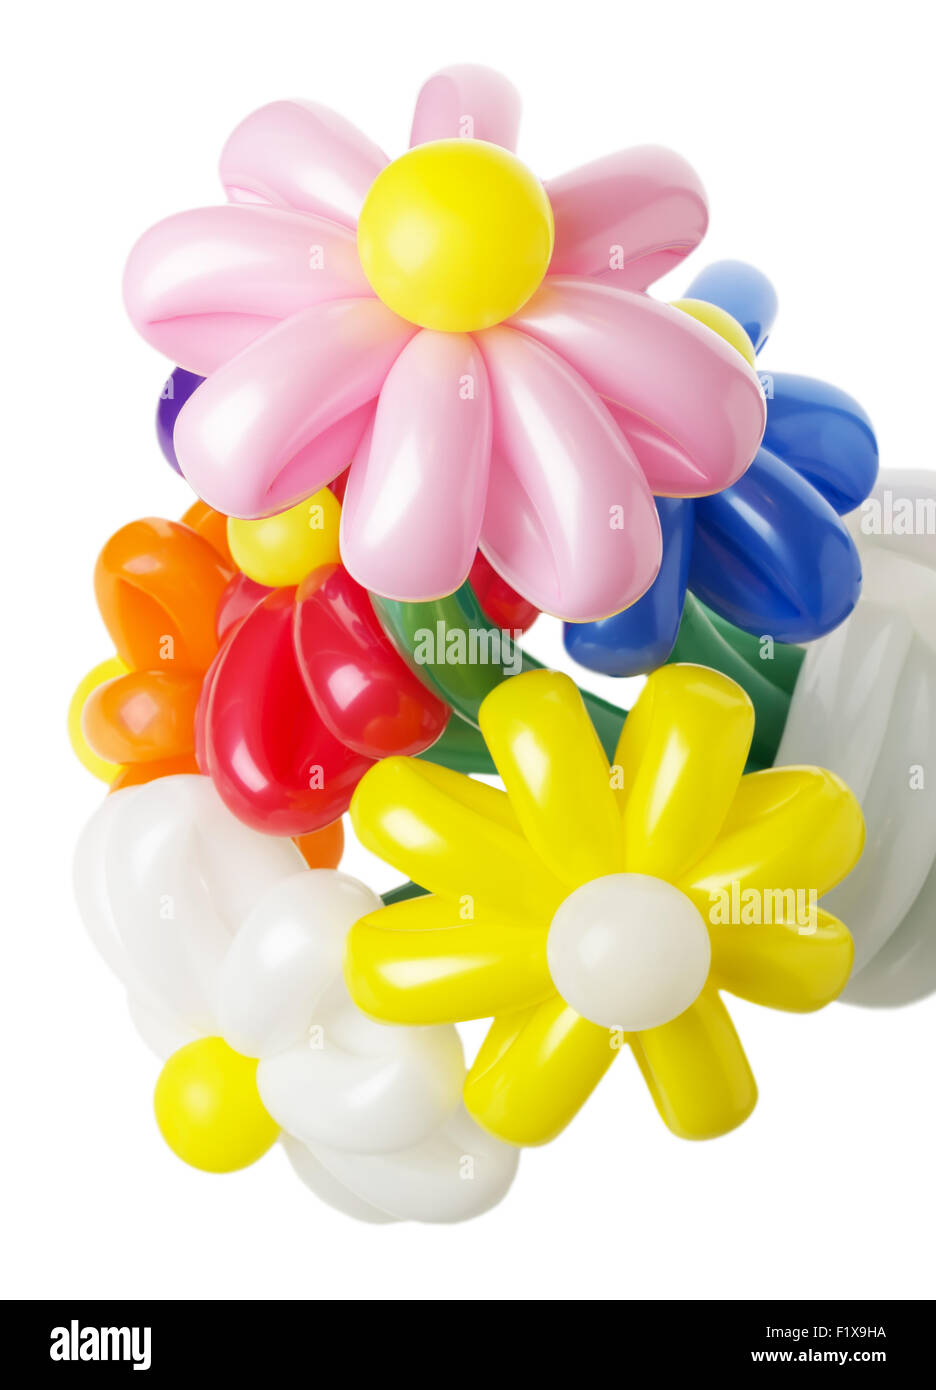 Strauß mit bunten Ballons Blumen auf weißem Hintergrund. Stockfoto